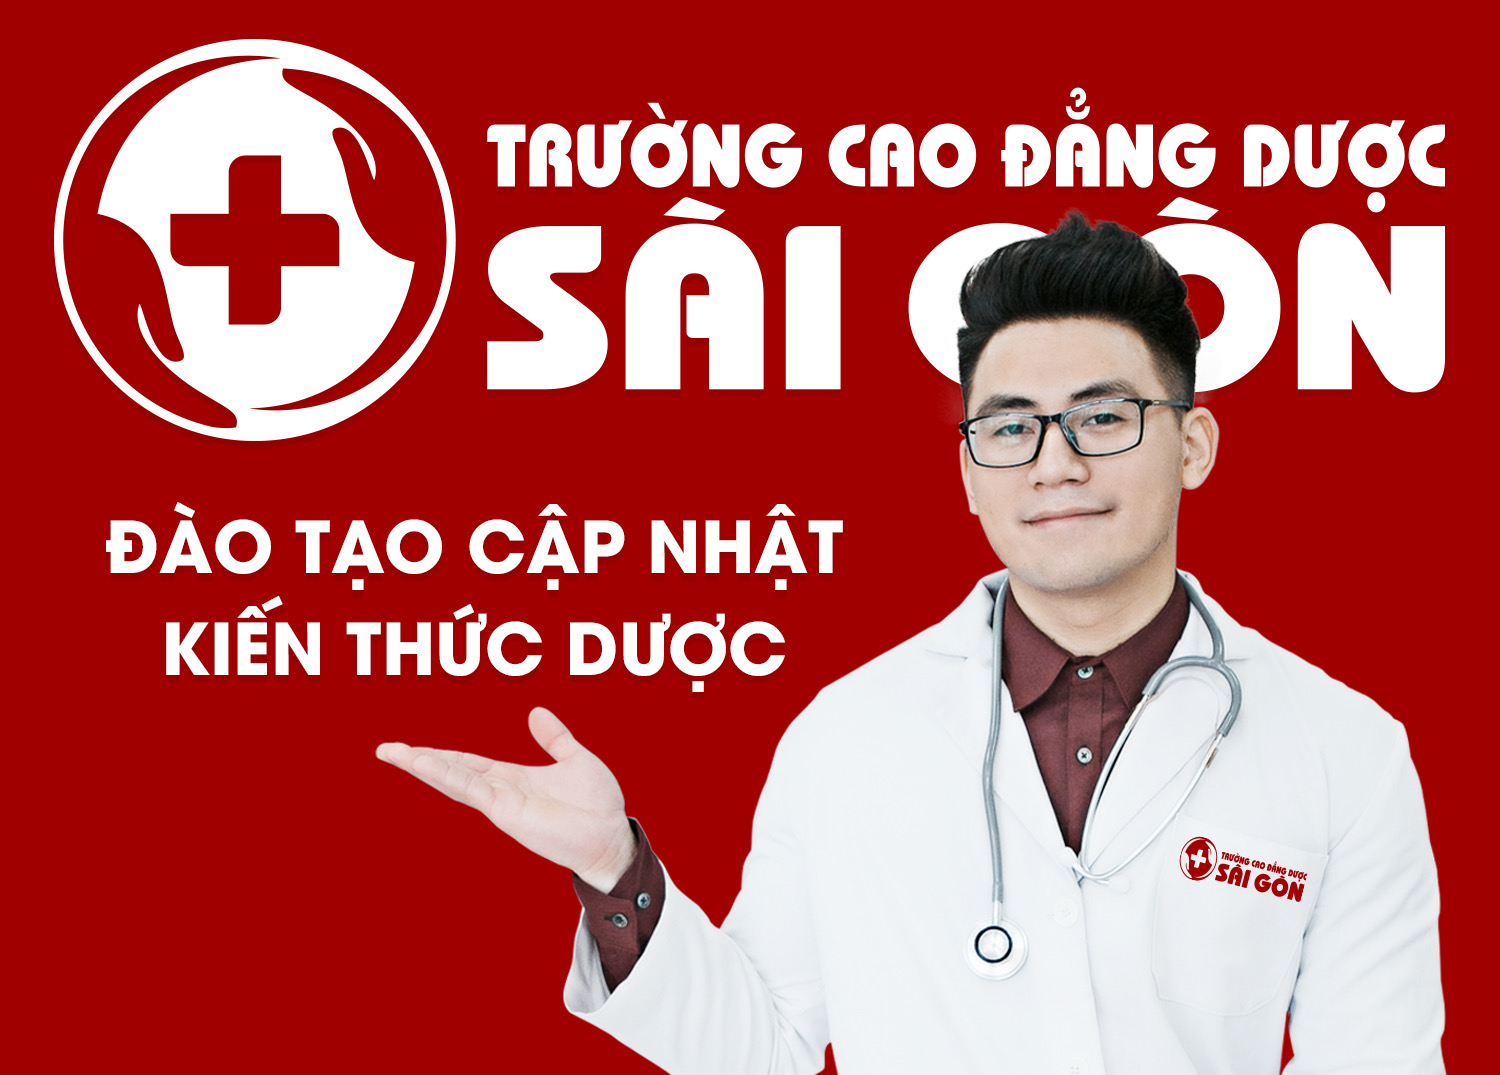 Tuyển sinh lớp cập nhật kiến thức chuyên môn về Dược học Sài Gòn năm 2021